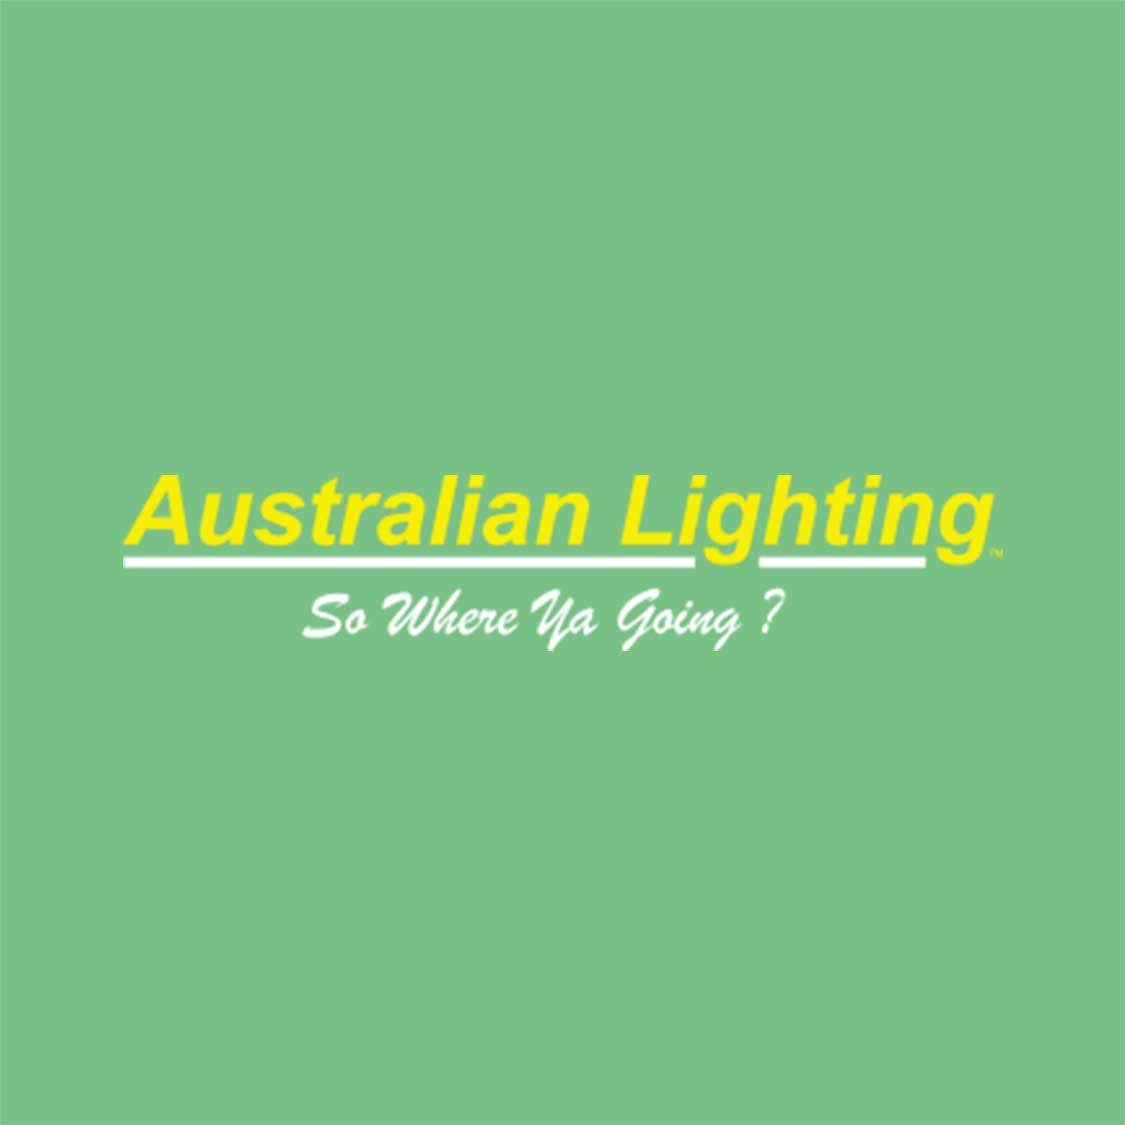 Waltz Ip44 Bathroom Wall Light - Wall Lights For Bathrooms Australia